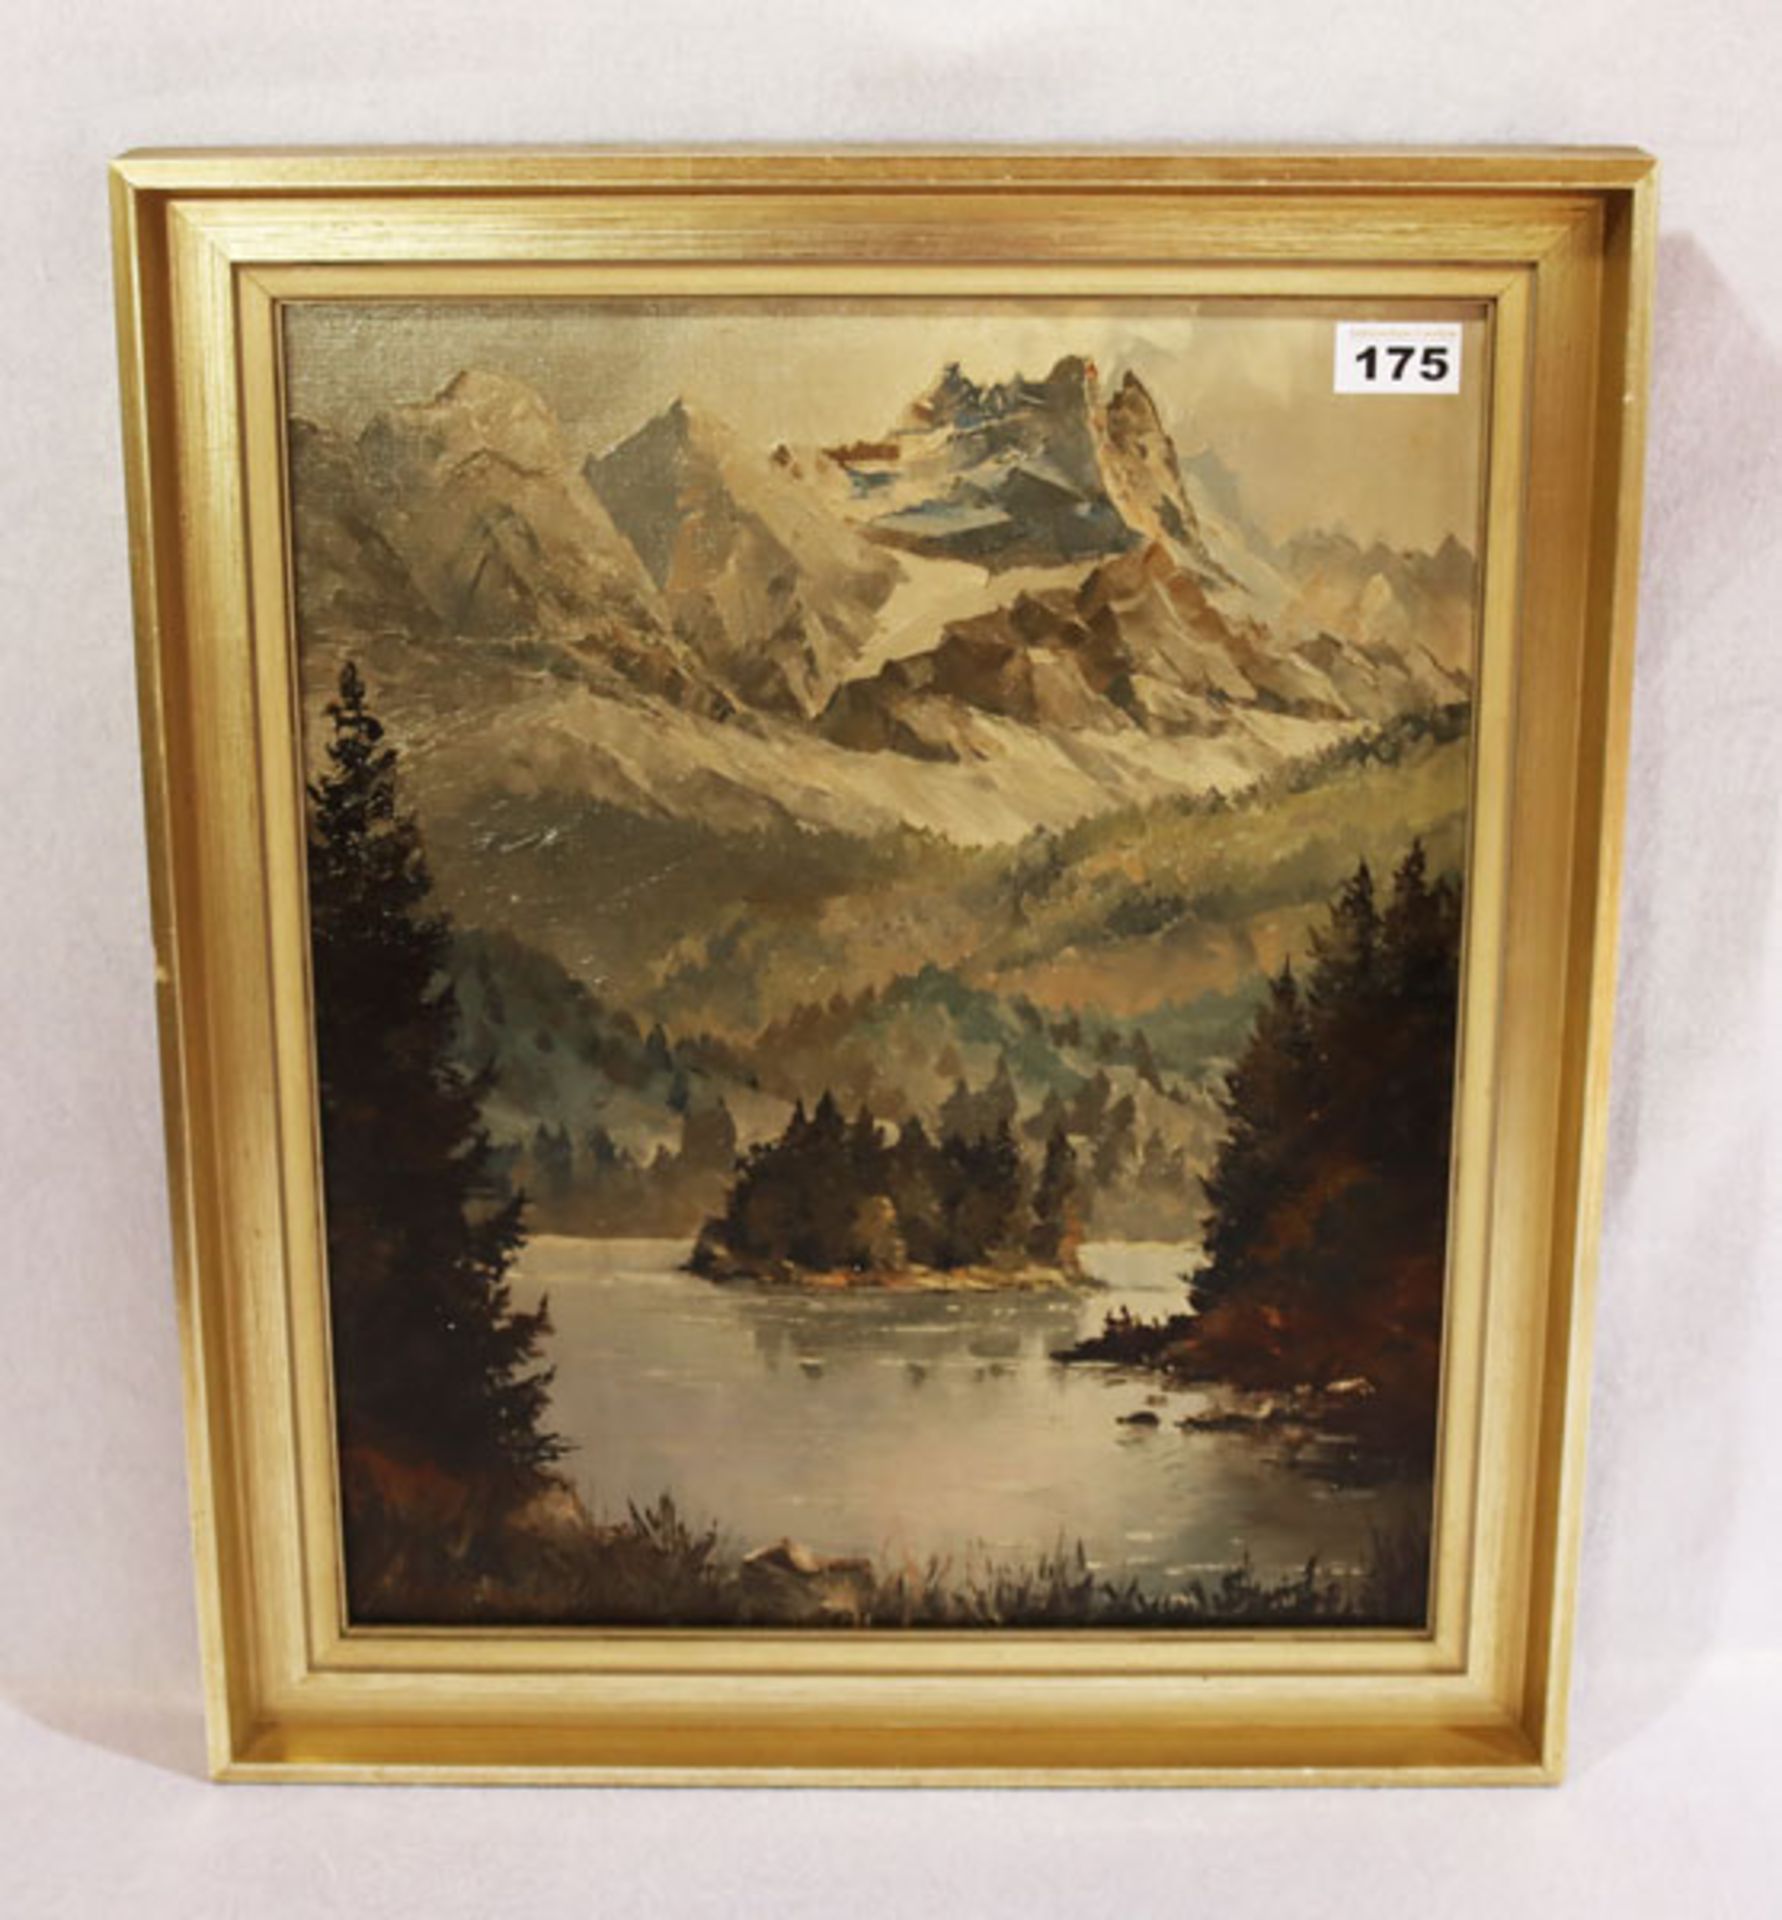 Gemälde ÖL/LW 'Eibsee mit Zugspitze', undeutlich signiert, gerahmt, Rahmen bestossen/beschädigt,